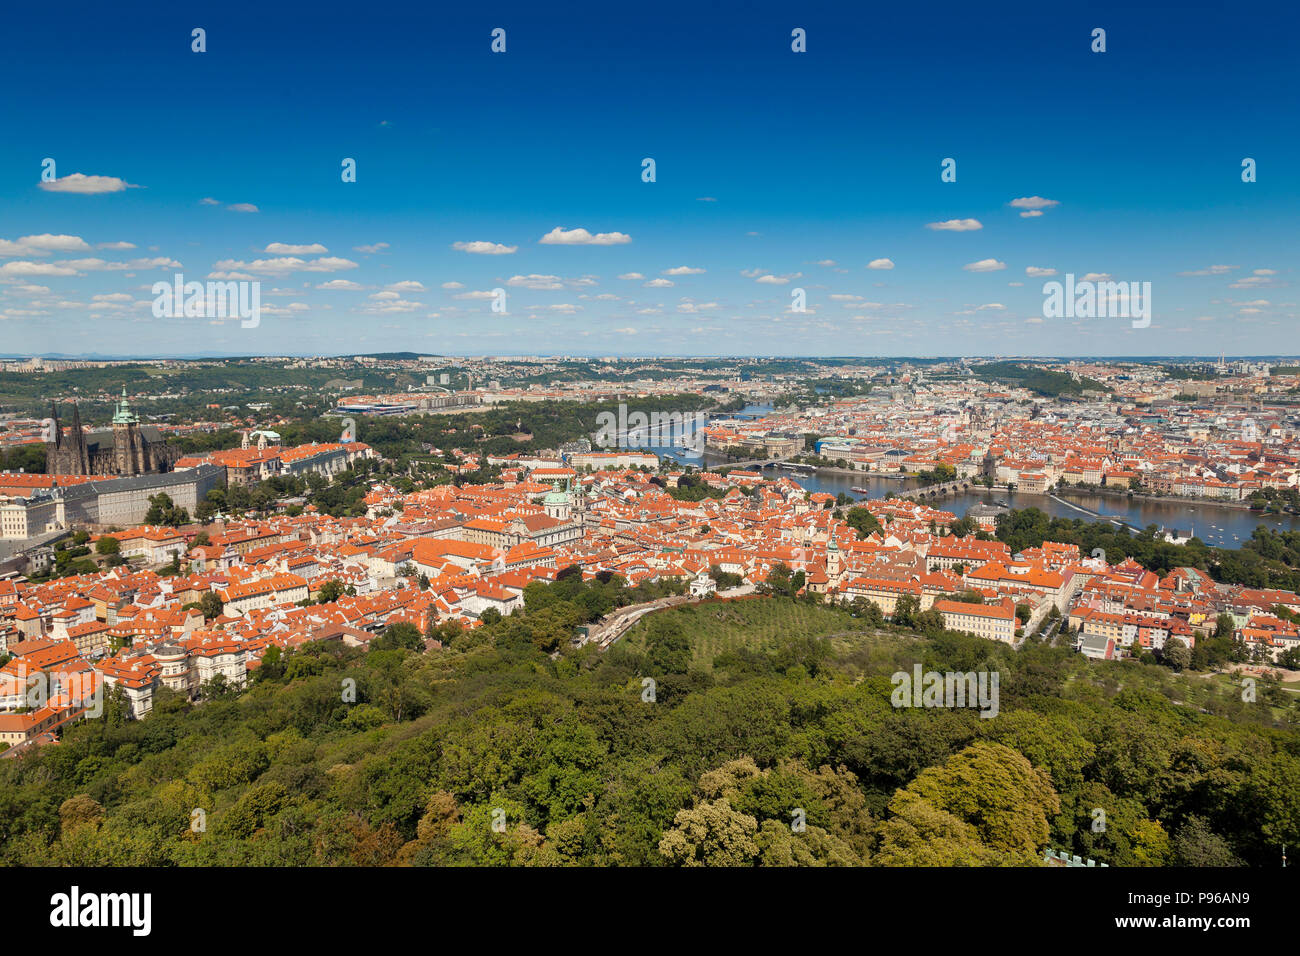 Vista panoramica di Praga da vicino il monastero di Strahov, mostrando il castello e la cattedrale, ponti, sole luminoso cielo blu. Foto Stock